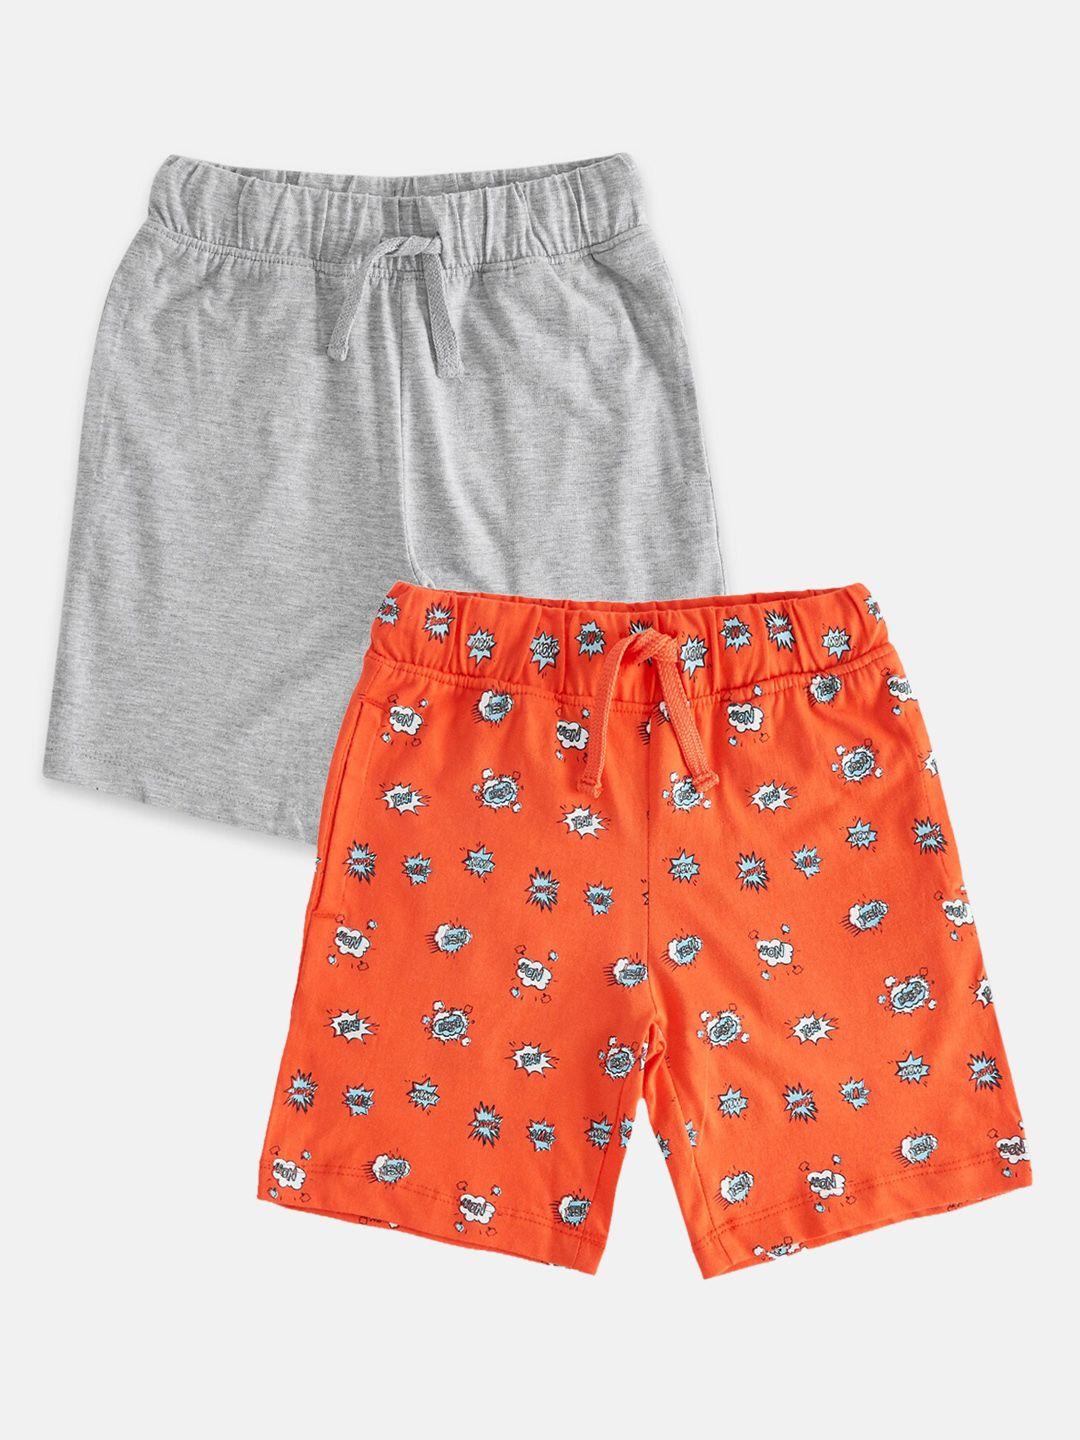 pantaloons junior boys grey conversational printed shorts